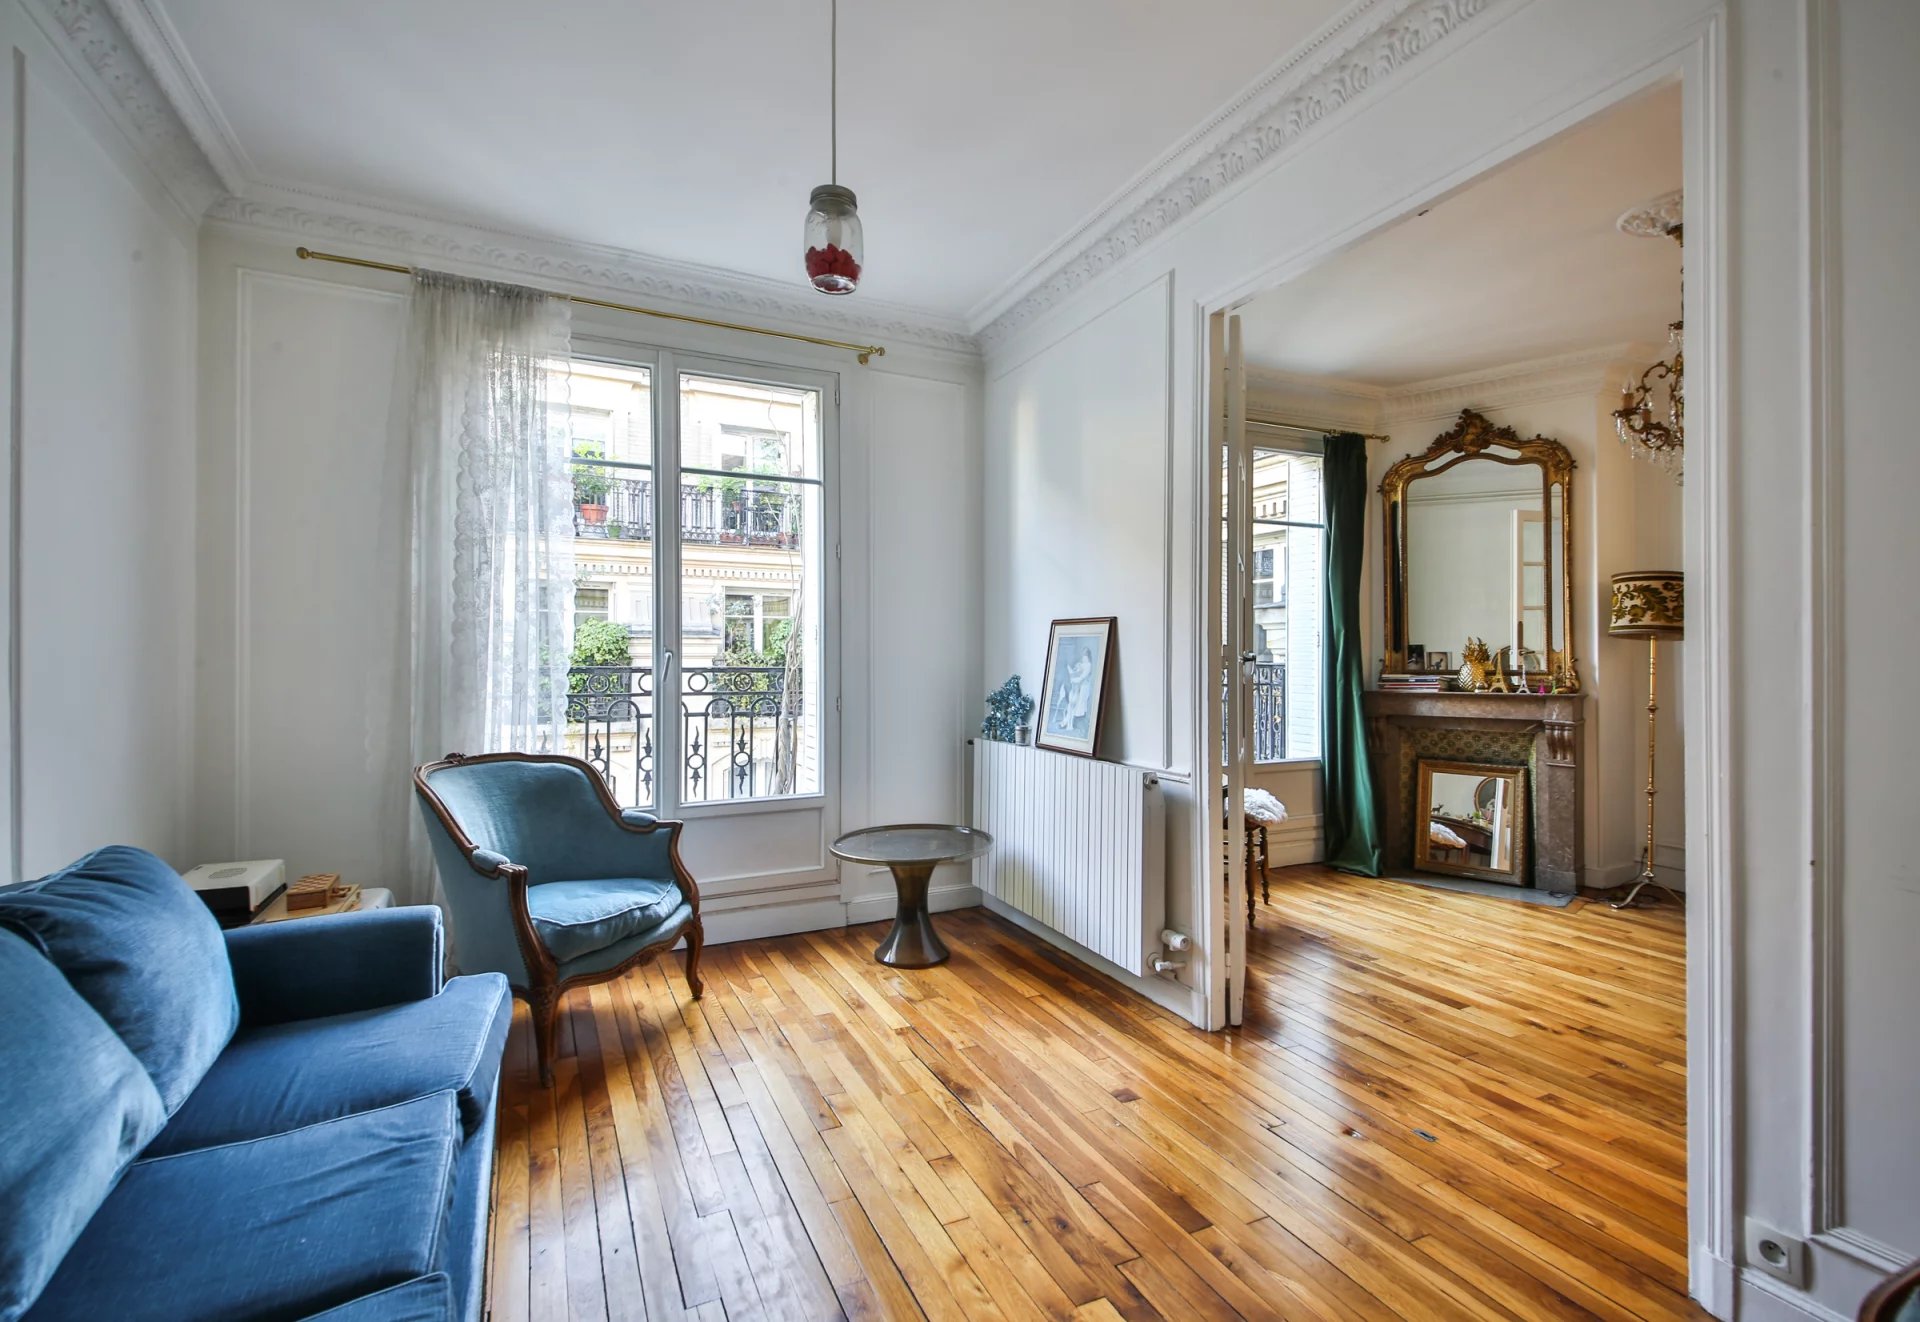 Sale Apartment - Paris 18th (Paris 18ème)